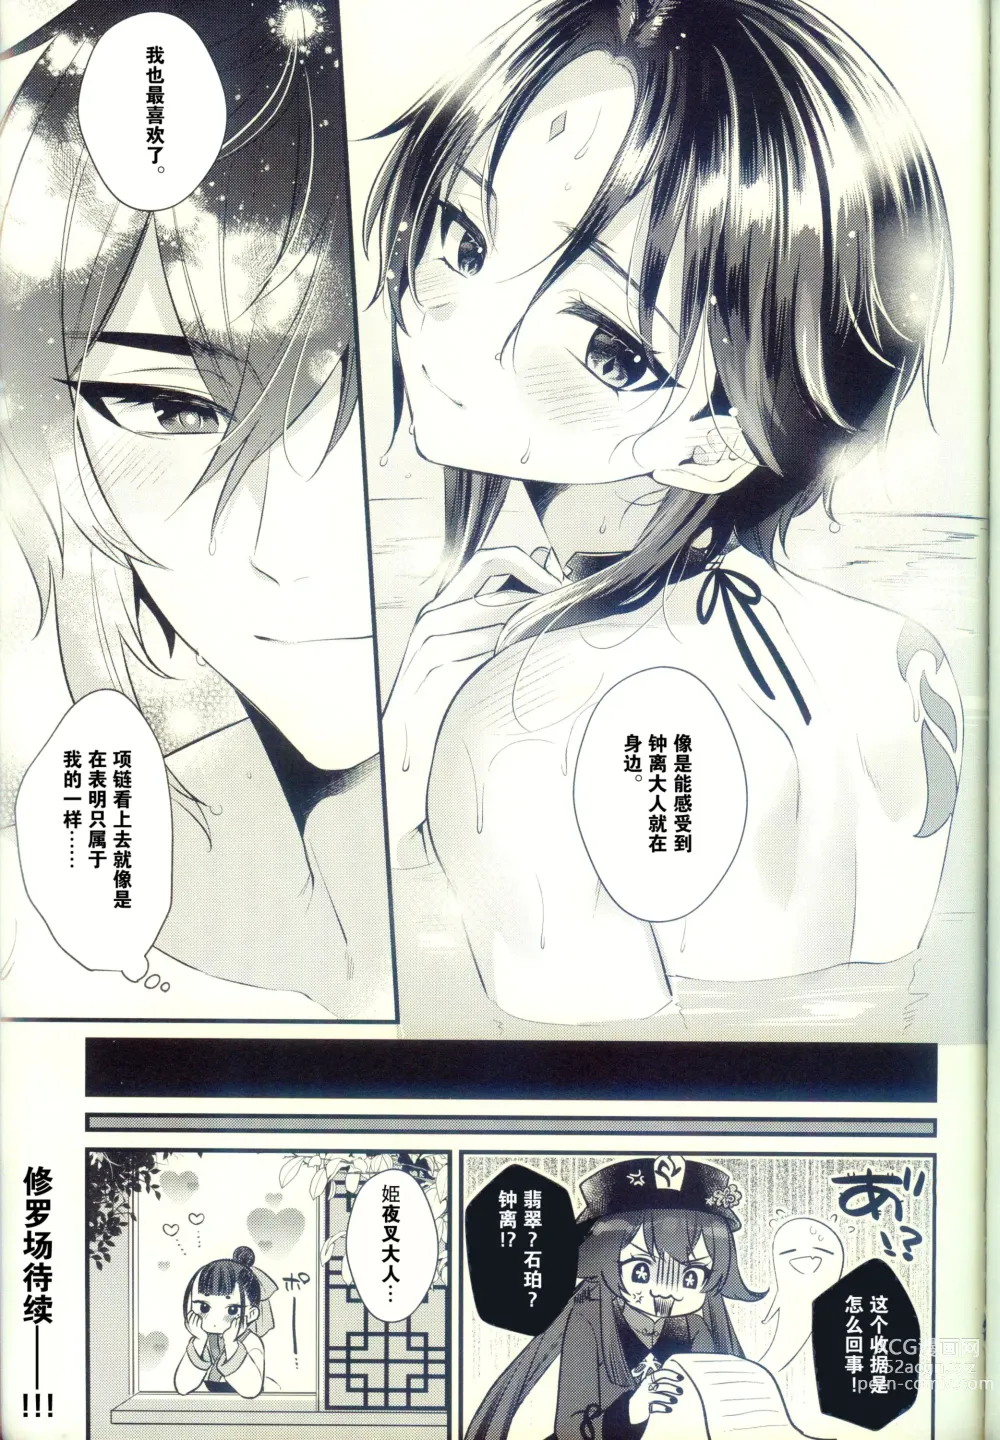 Page 46 of doujinshi Jigoku no sata mo Kami Shidai